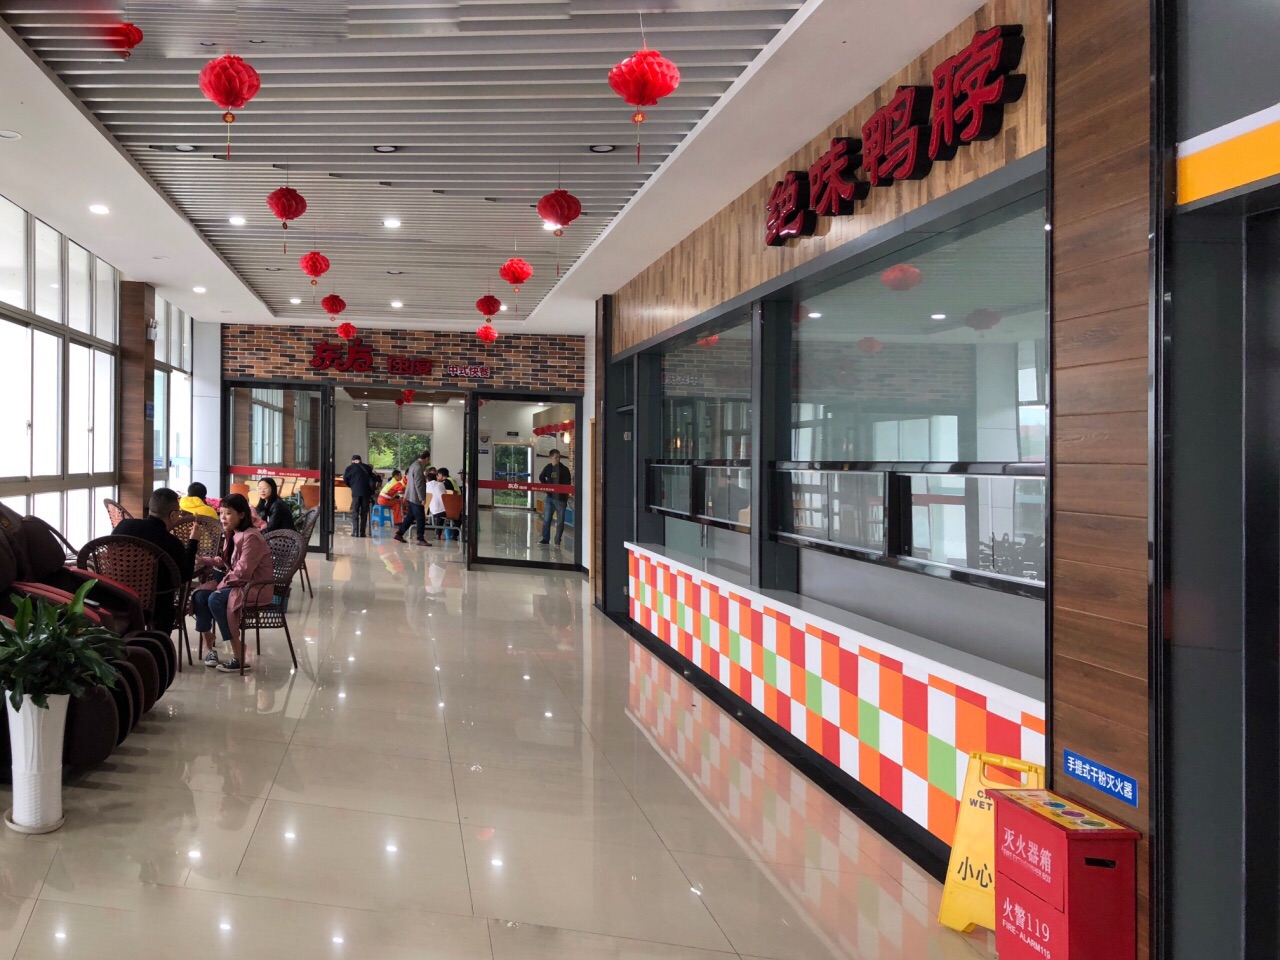 上海前滩澜臻餐厅-美食广场设计-员工餐厅设计-餐厅设计-金枫设计